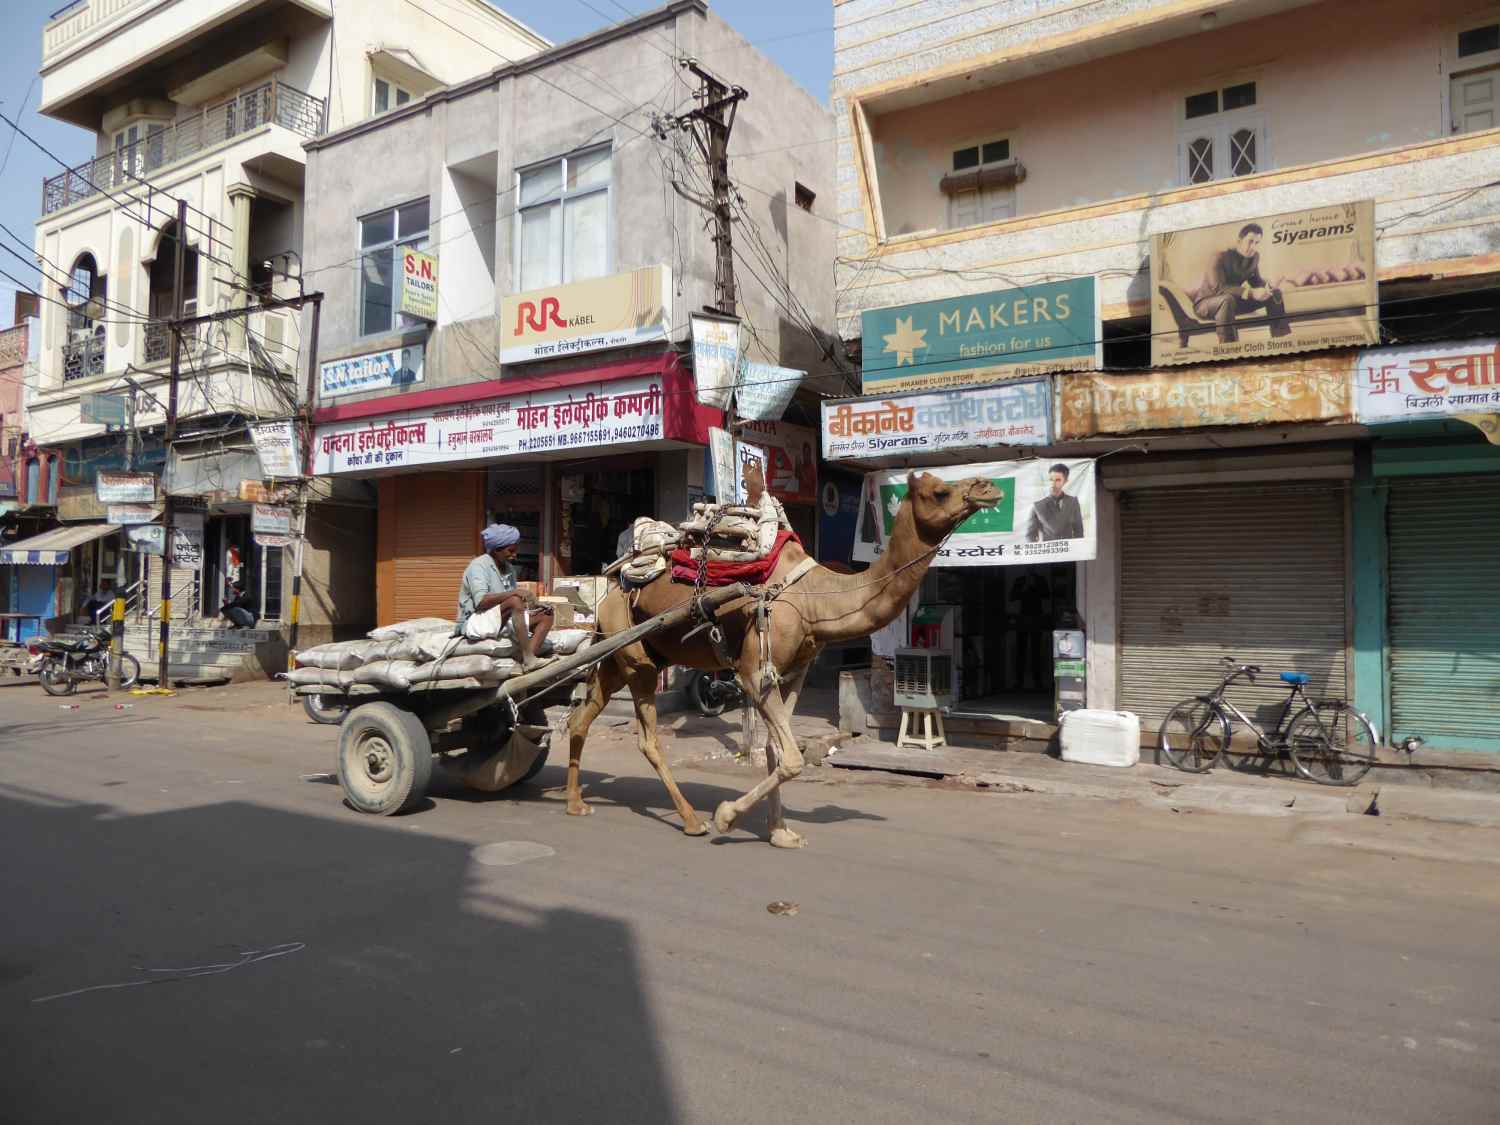 Street scene in Bikaner - with camel